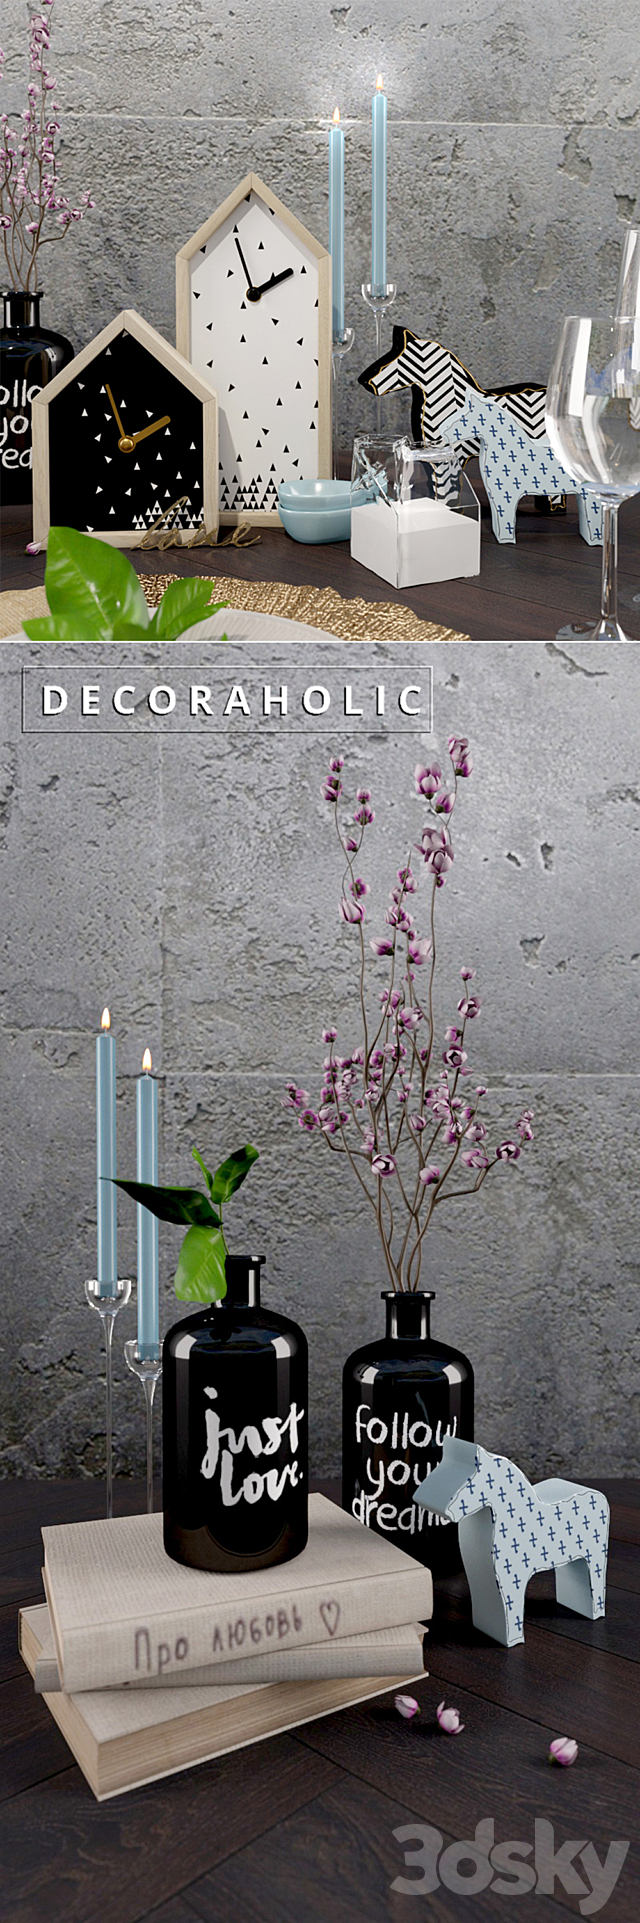 Decorative set_decoraholic_?1 3DSMax File - thumbnail 2